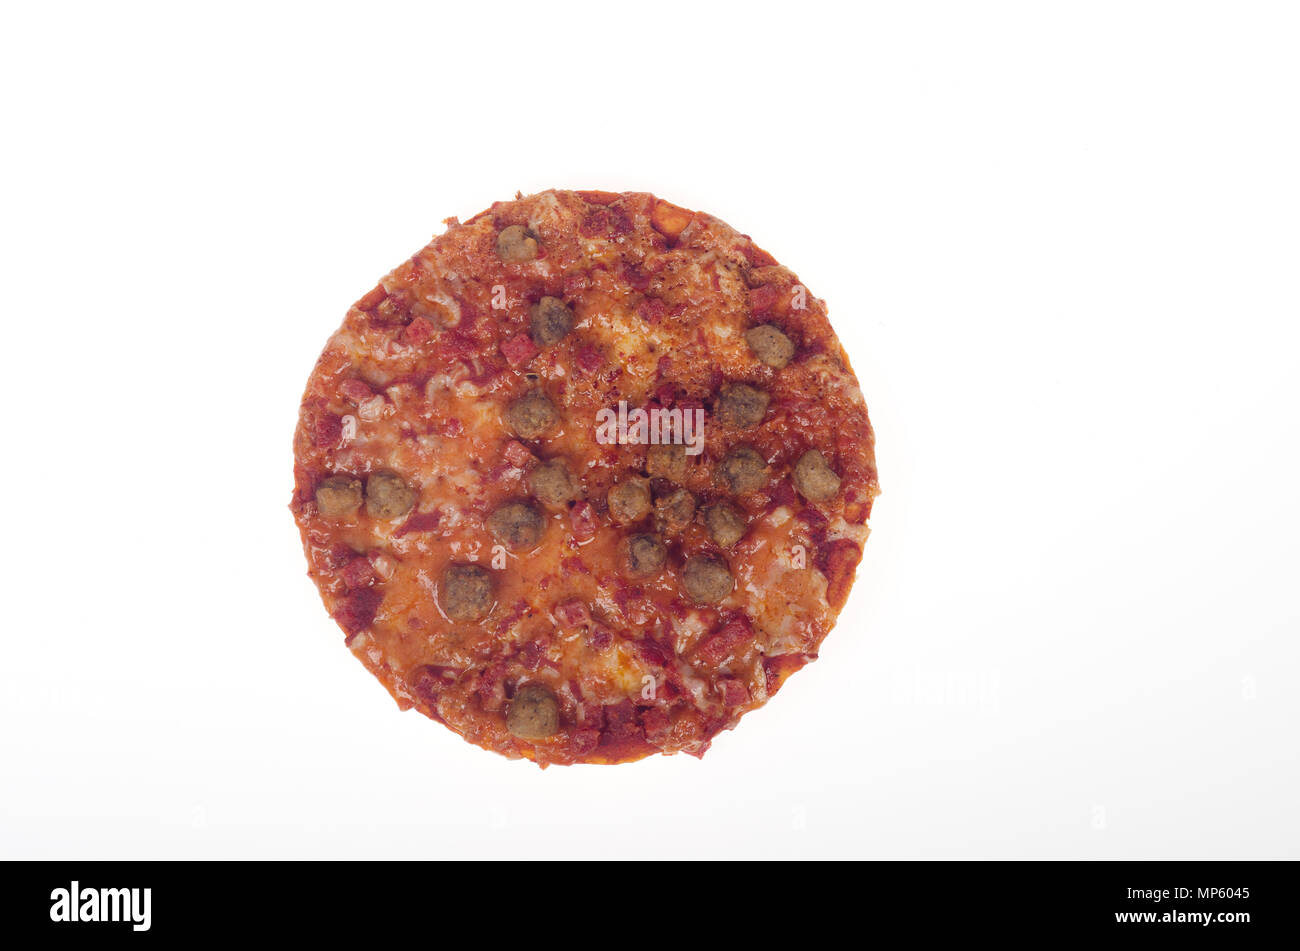 Petite pizza personnelle avec saucisse et viande pepperoni avec sauce tomate et fromage Banque D'Images